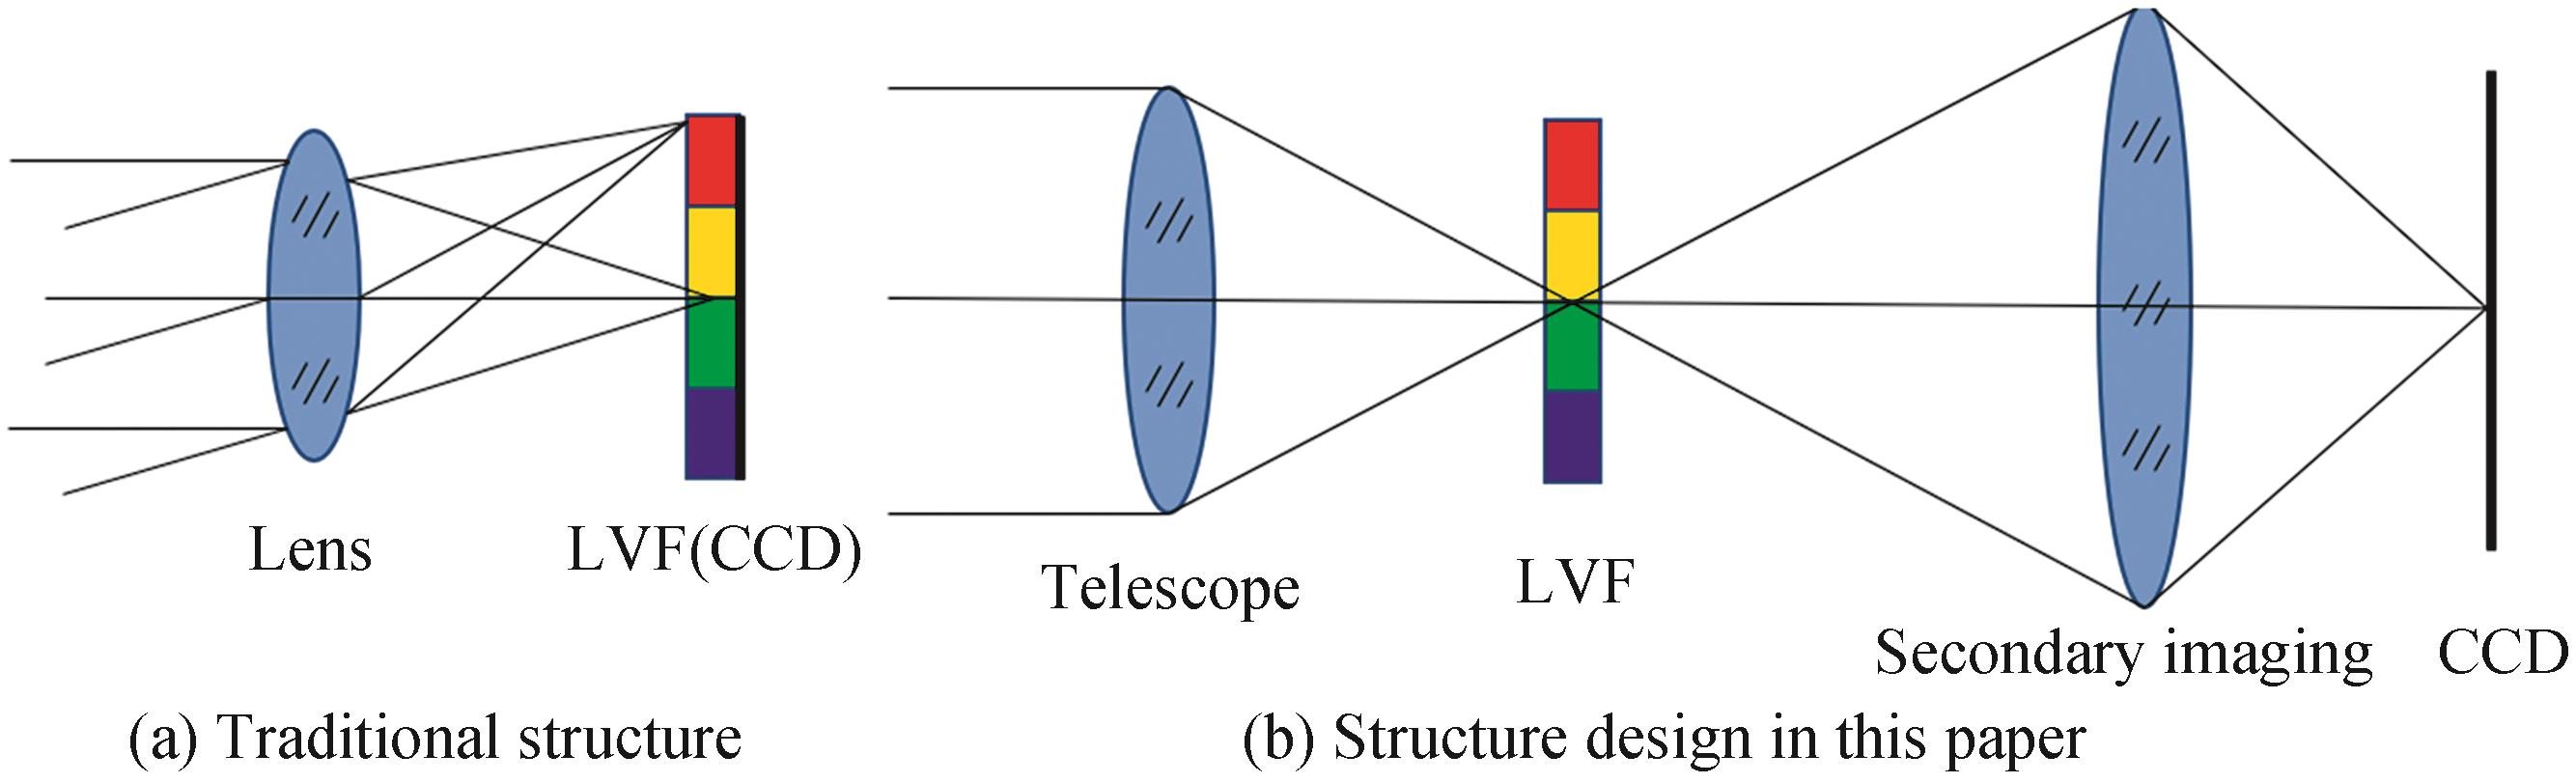 LVF hyperspectral imaging system